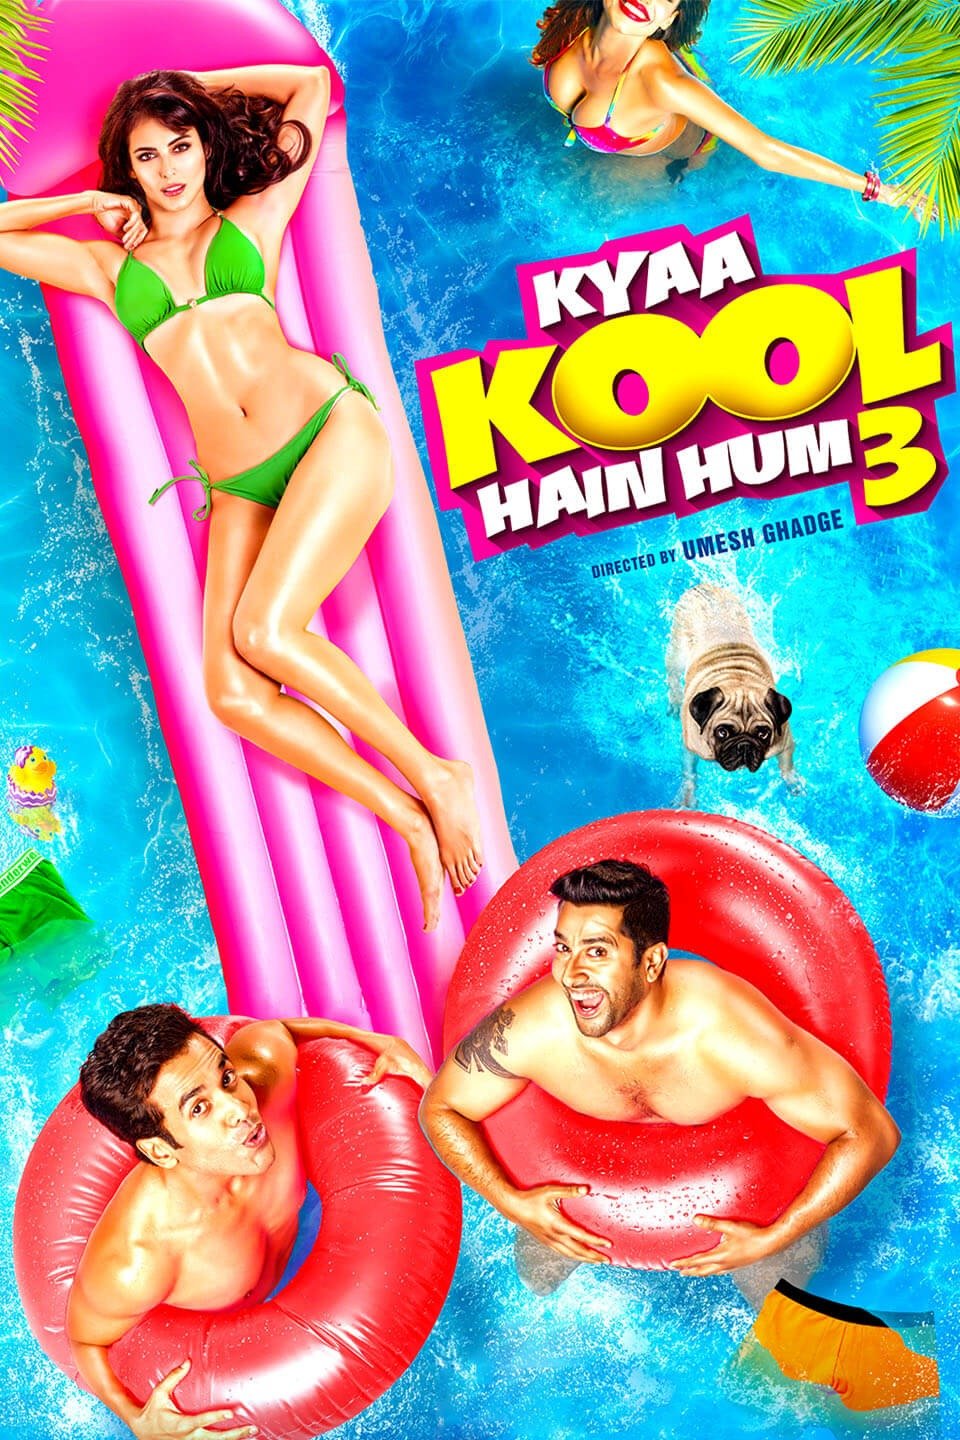 Meena Sex Photos - Kyaa Kool Hain Hum 3 - Rotten Tomatoes